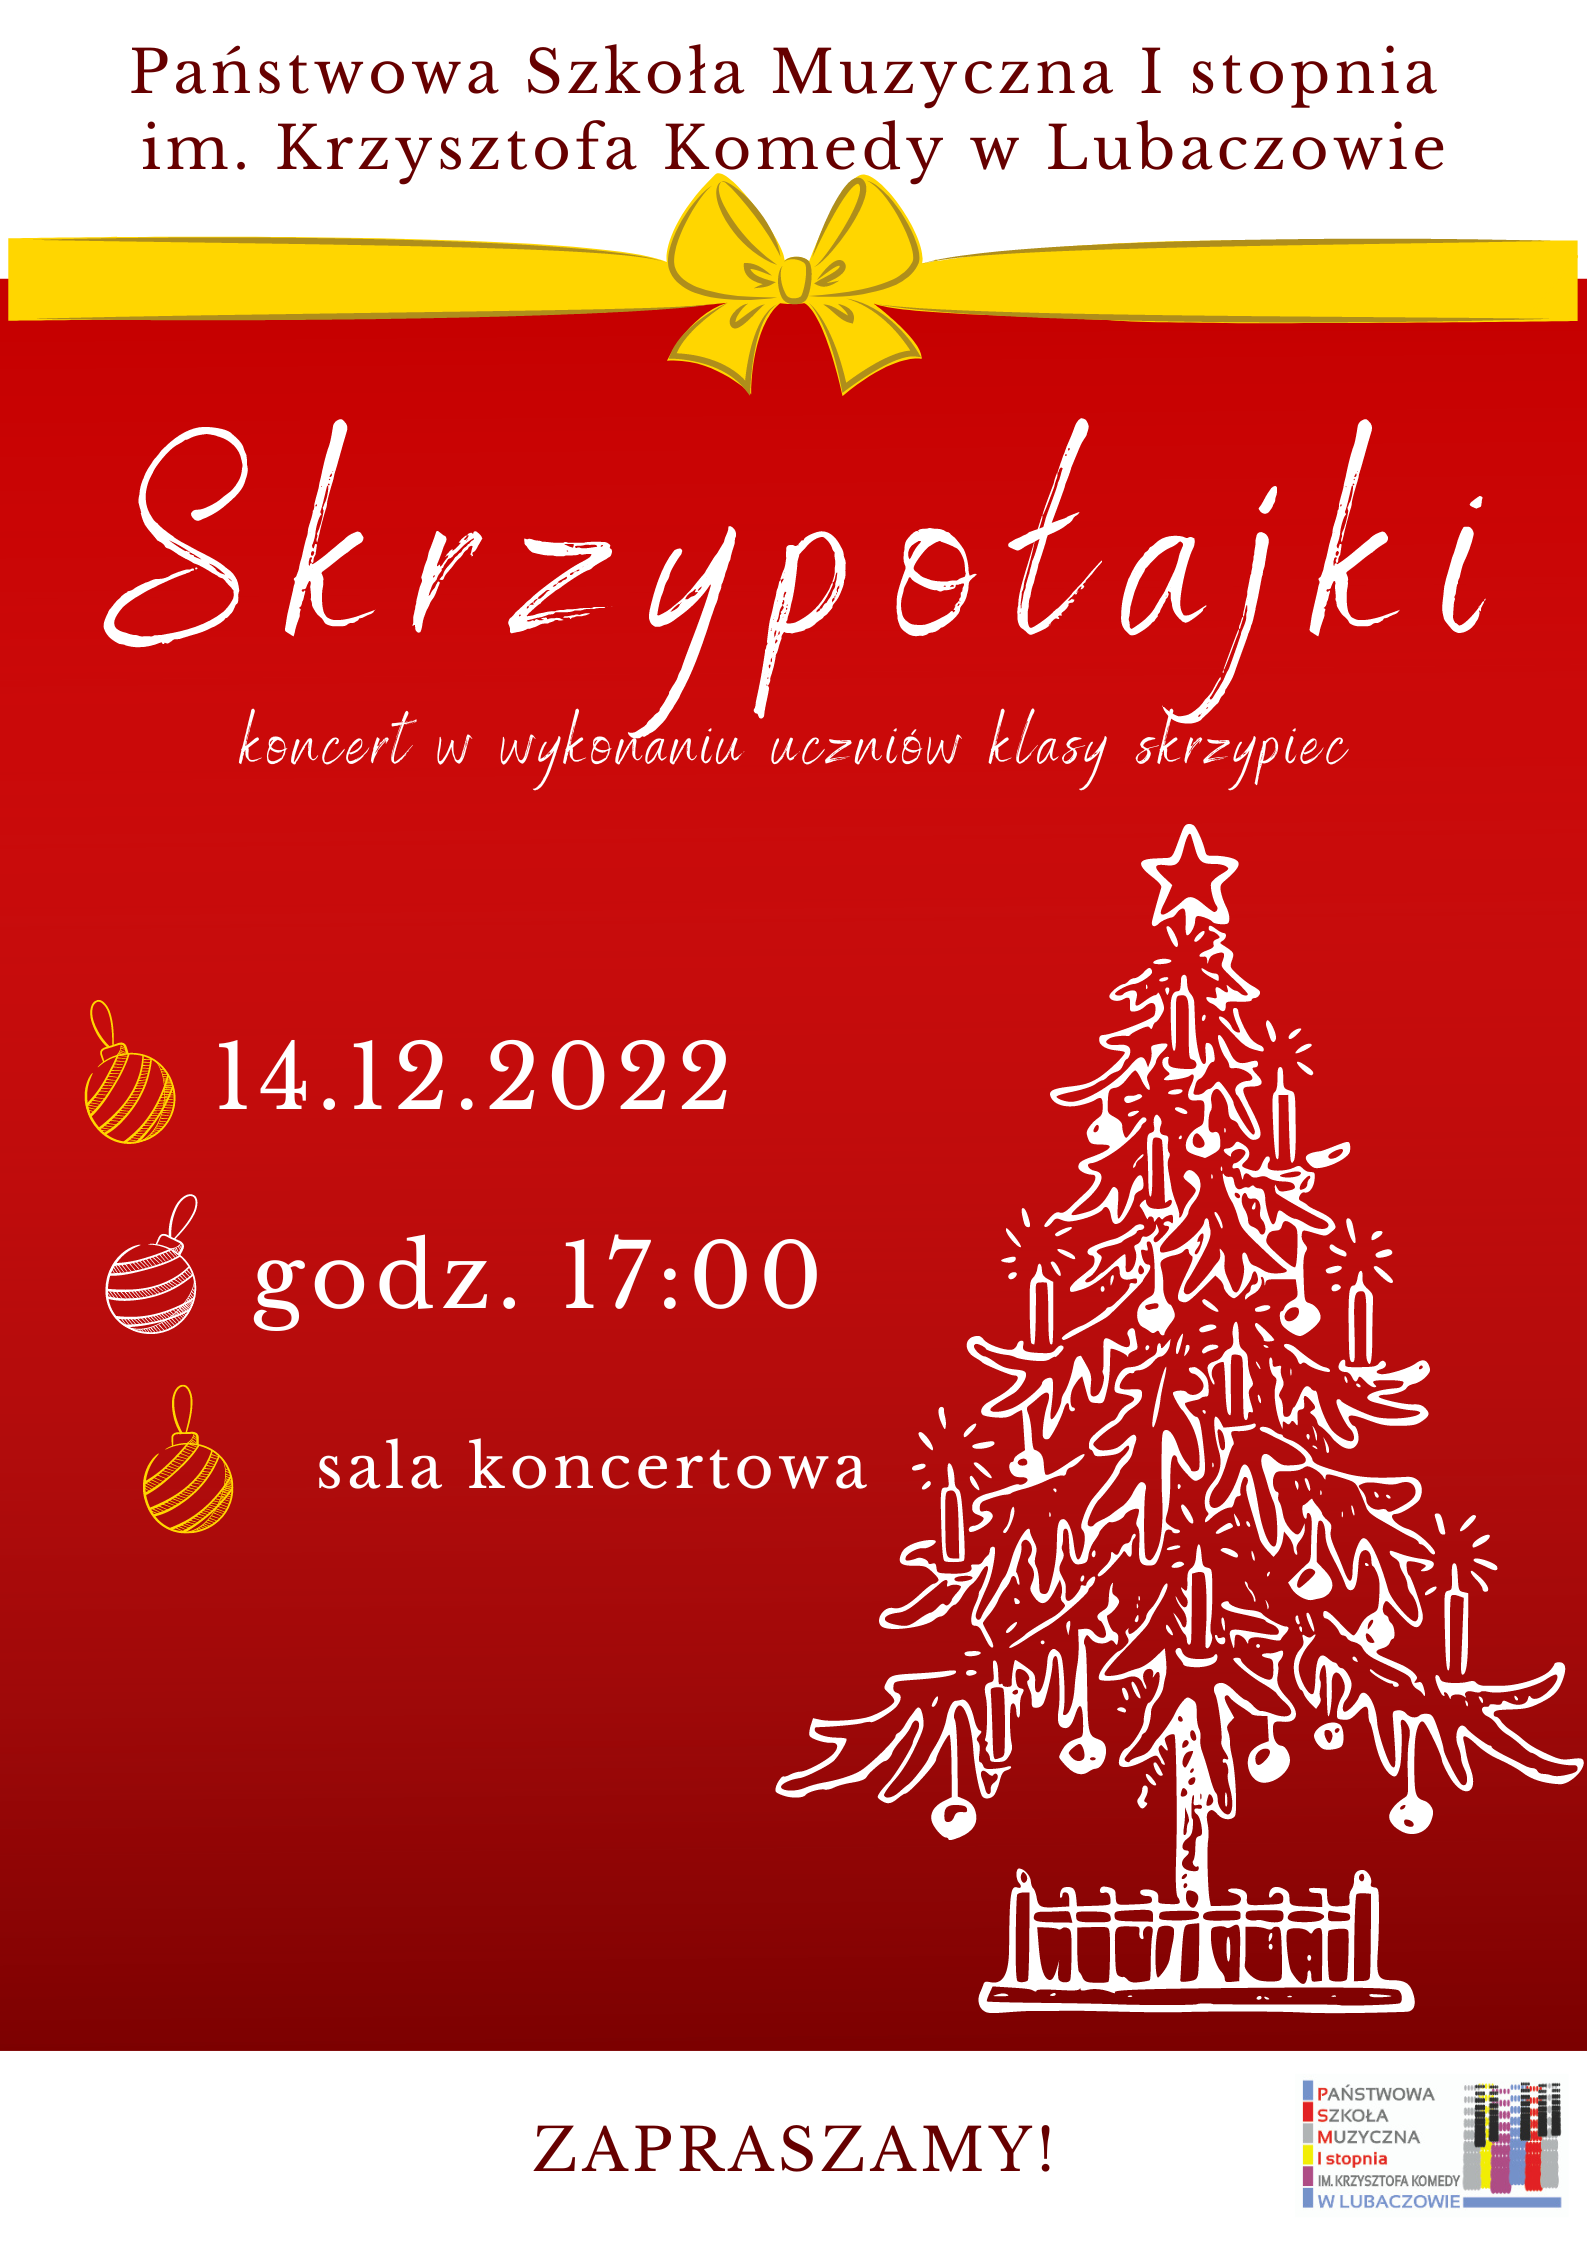 Plakat na czerwonym tle z logo szkoły w lewym dolnym roku, ikoną choinki w kolorze białym i informacją o koncercie w dniu 14 grudnia o godz. 17.00 w sali koncertowej